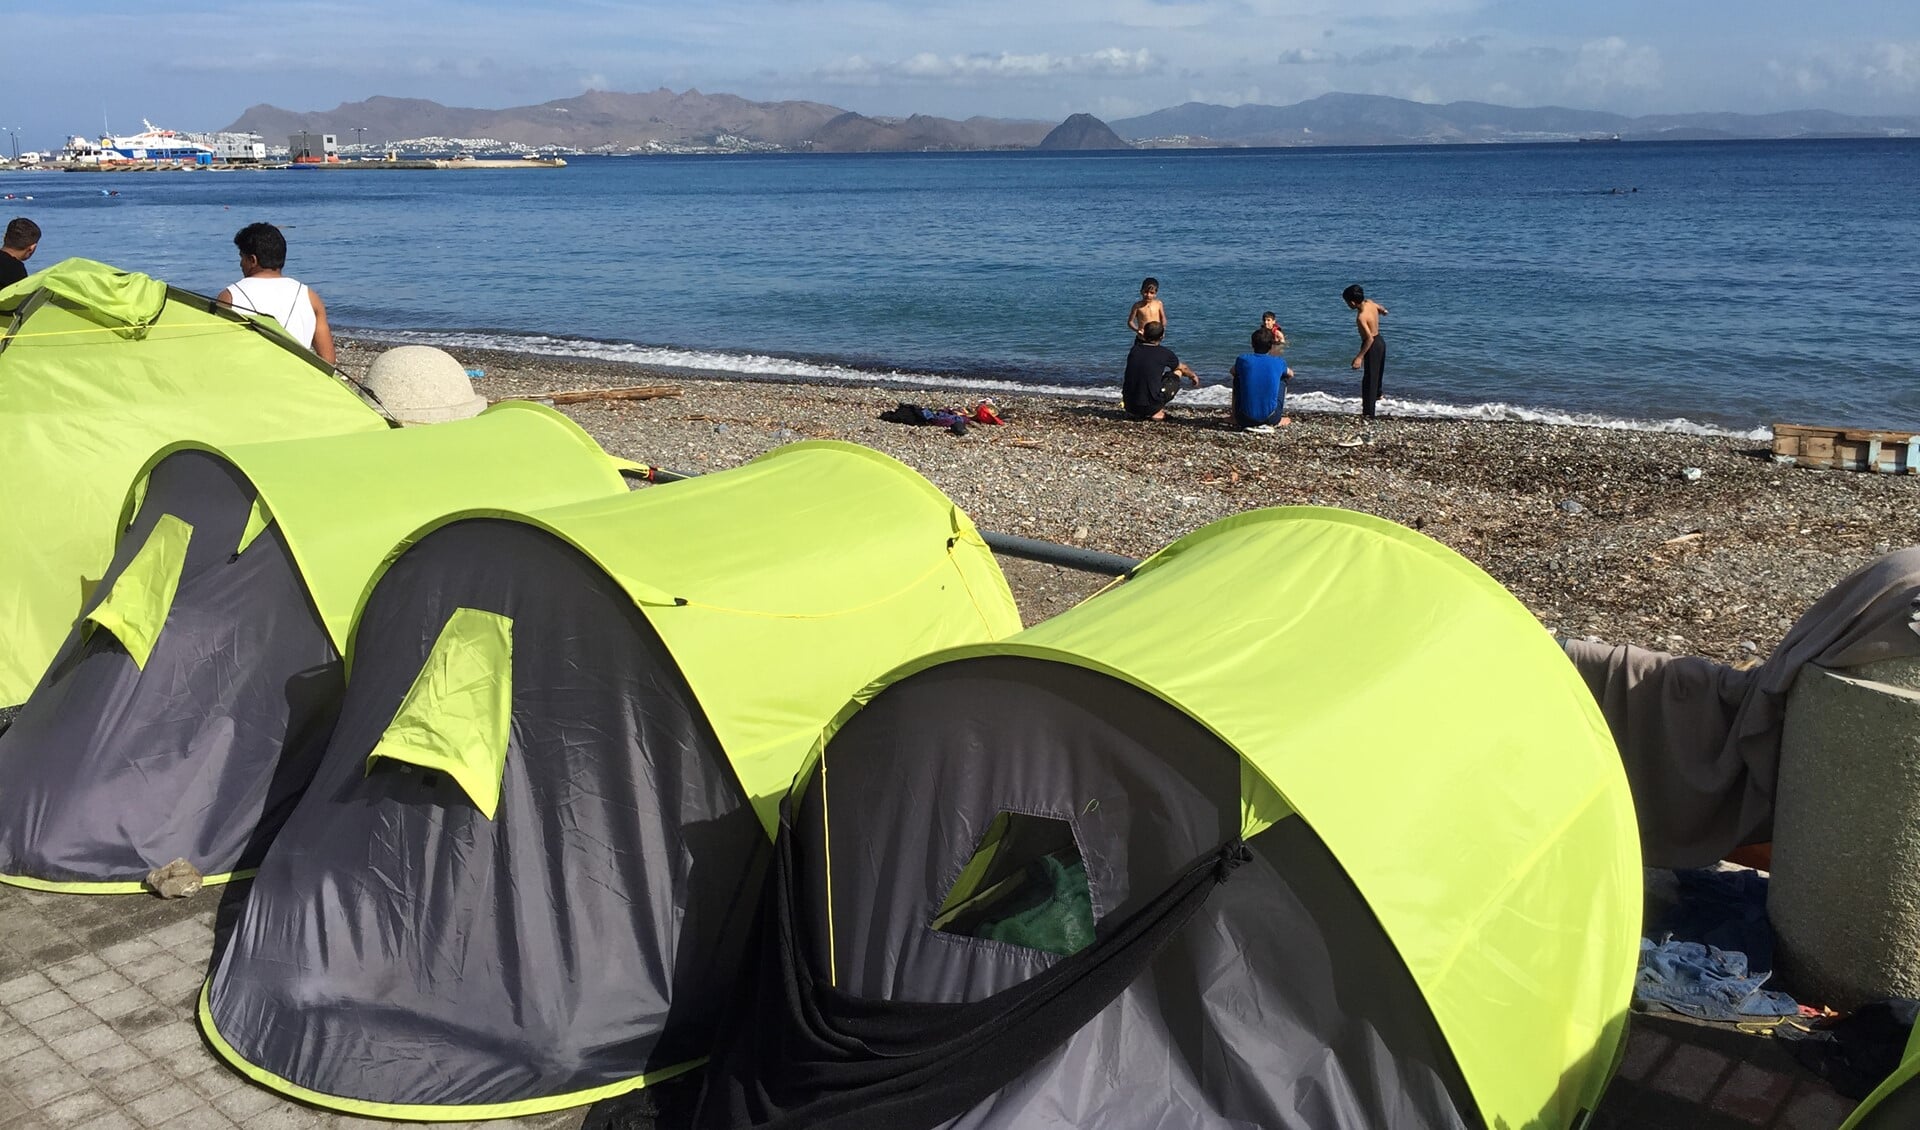 Dagelijks arriveren vluchtelingen in Europa. Ze bivakkeren vaak in tentjes langs de kustlijn. Foto: Martijn Mastenbroek (c)